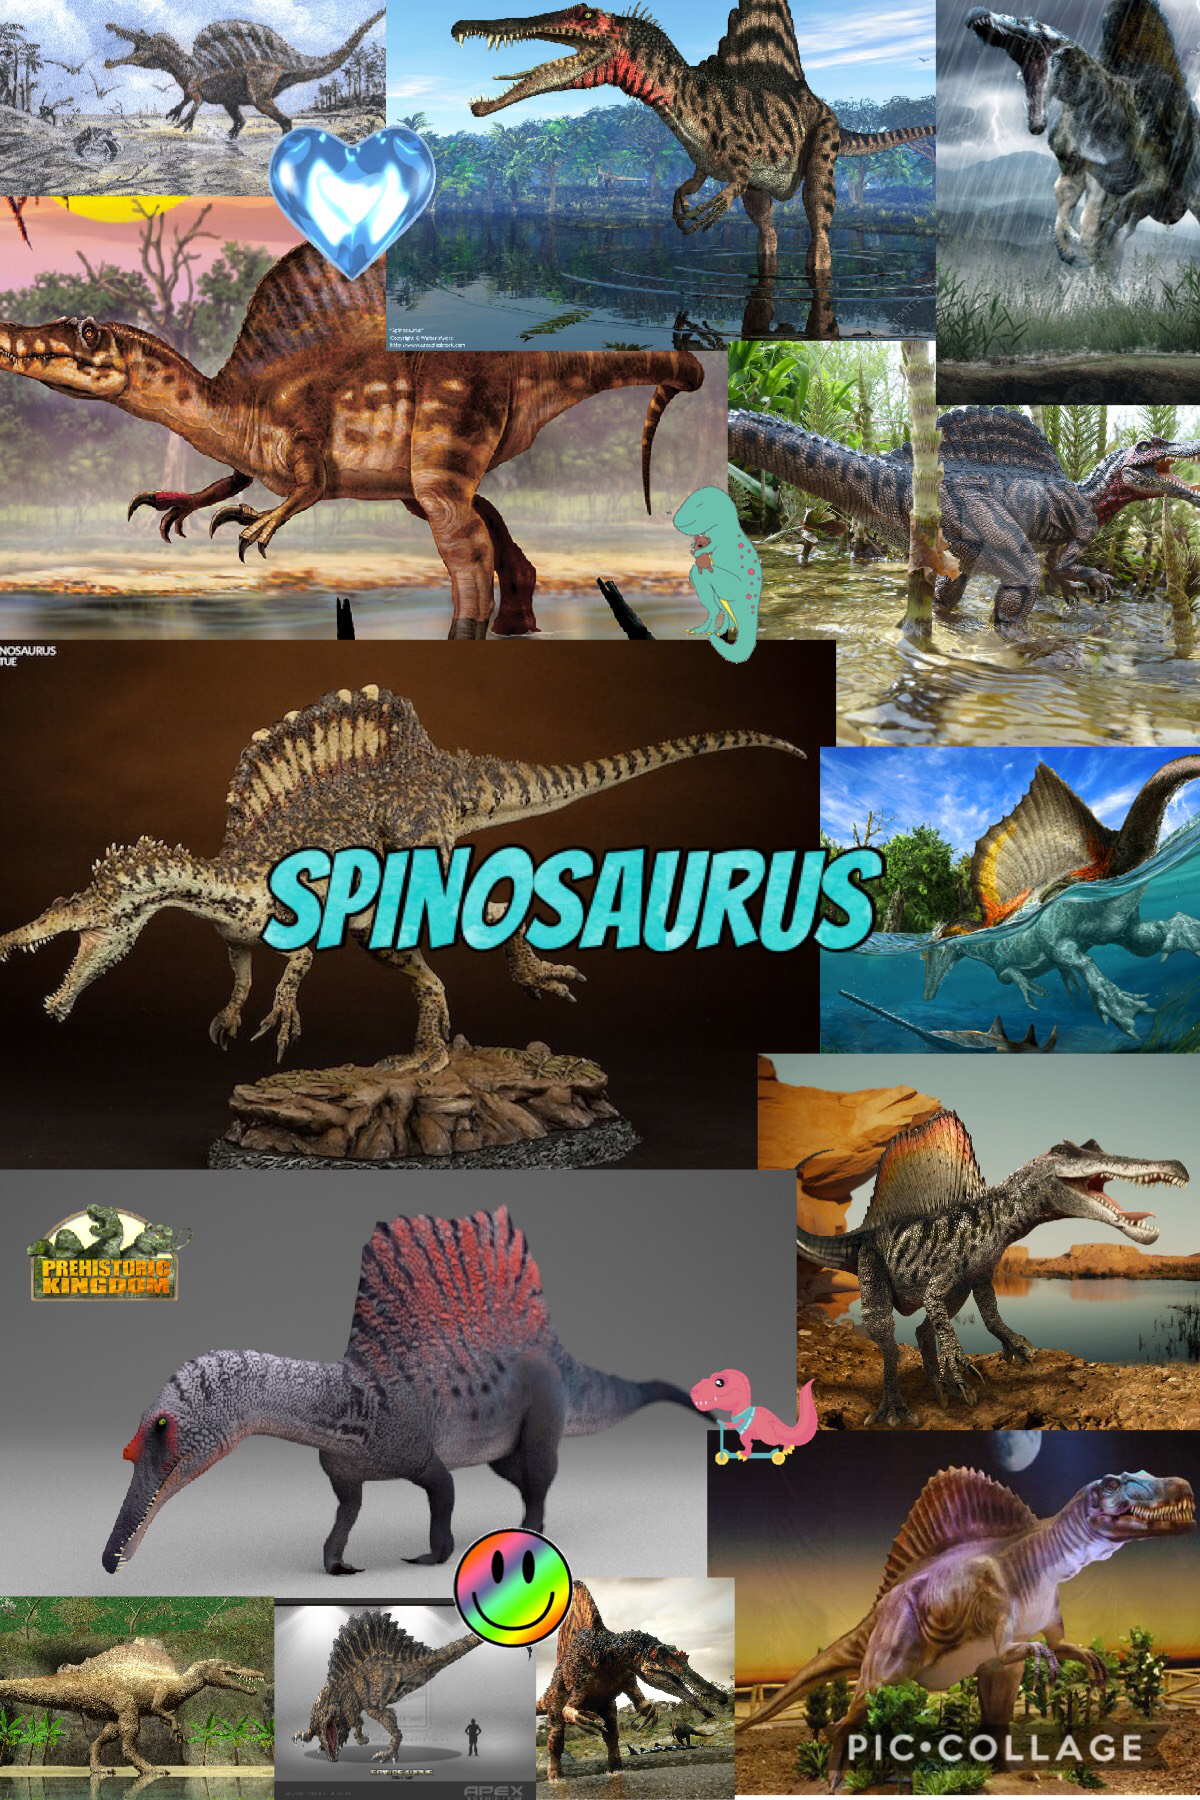 My new favorite dinosaur 🦖🦕 the Spinosaurus